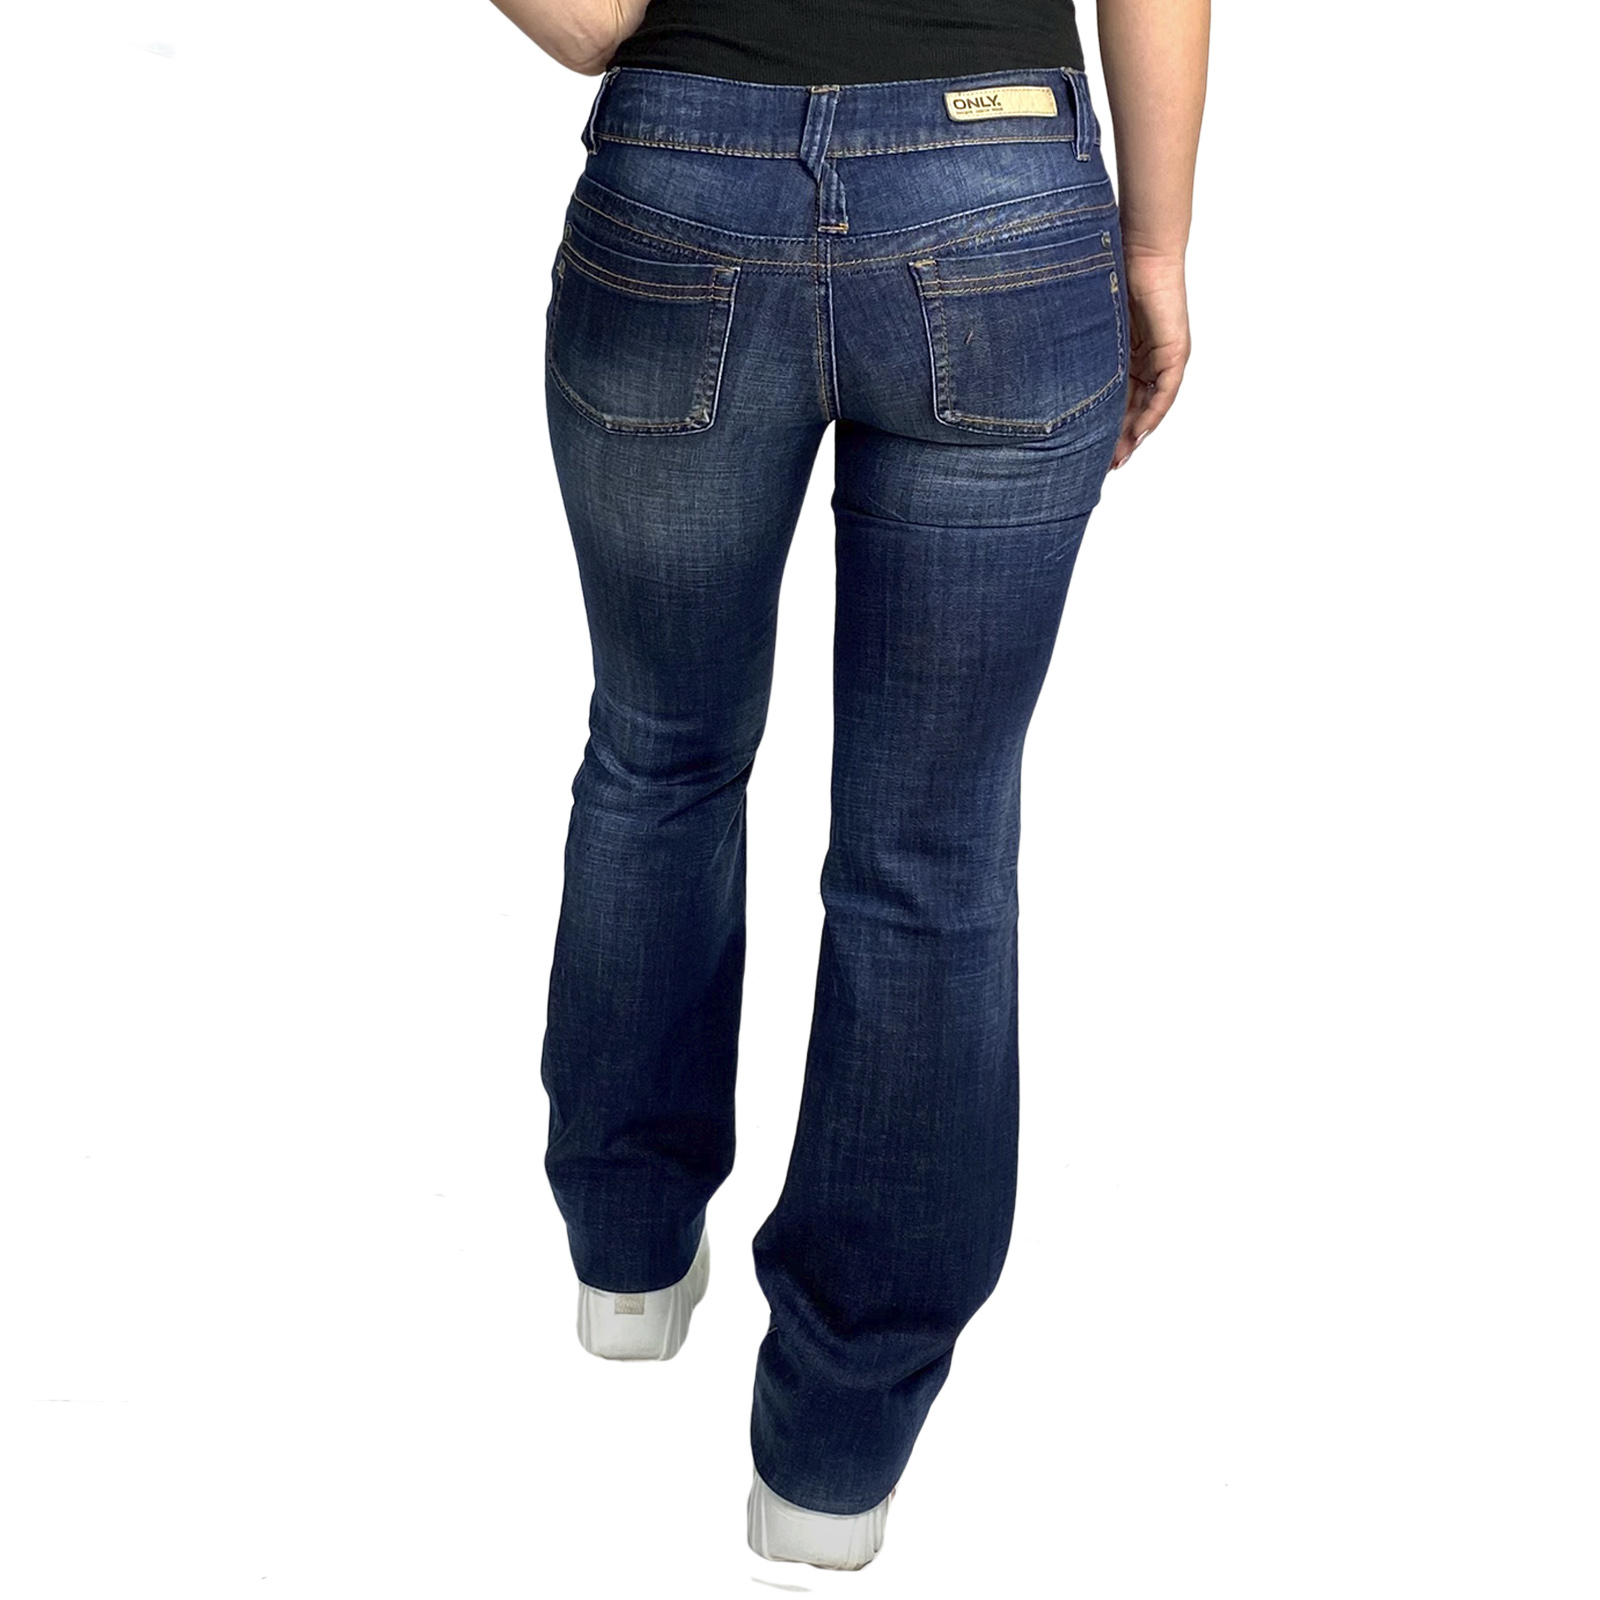 Купить в интернете хорошие джинсы по нормальной цене